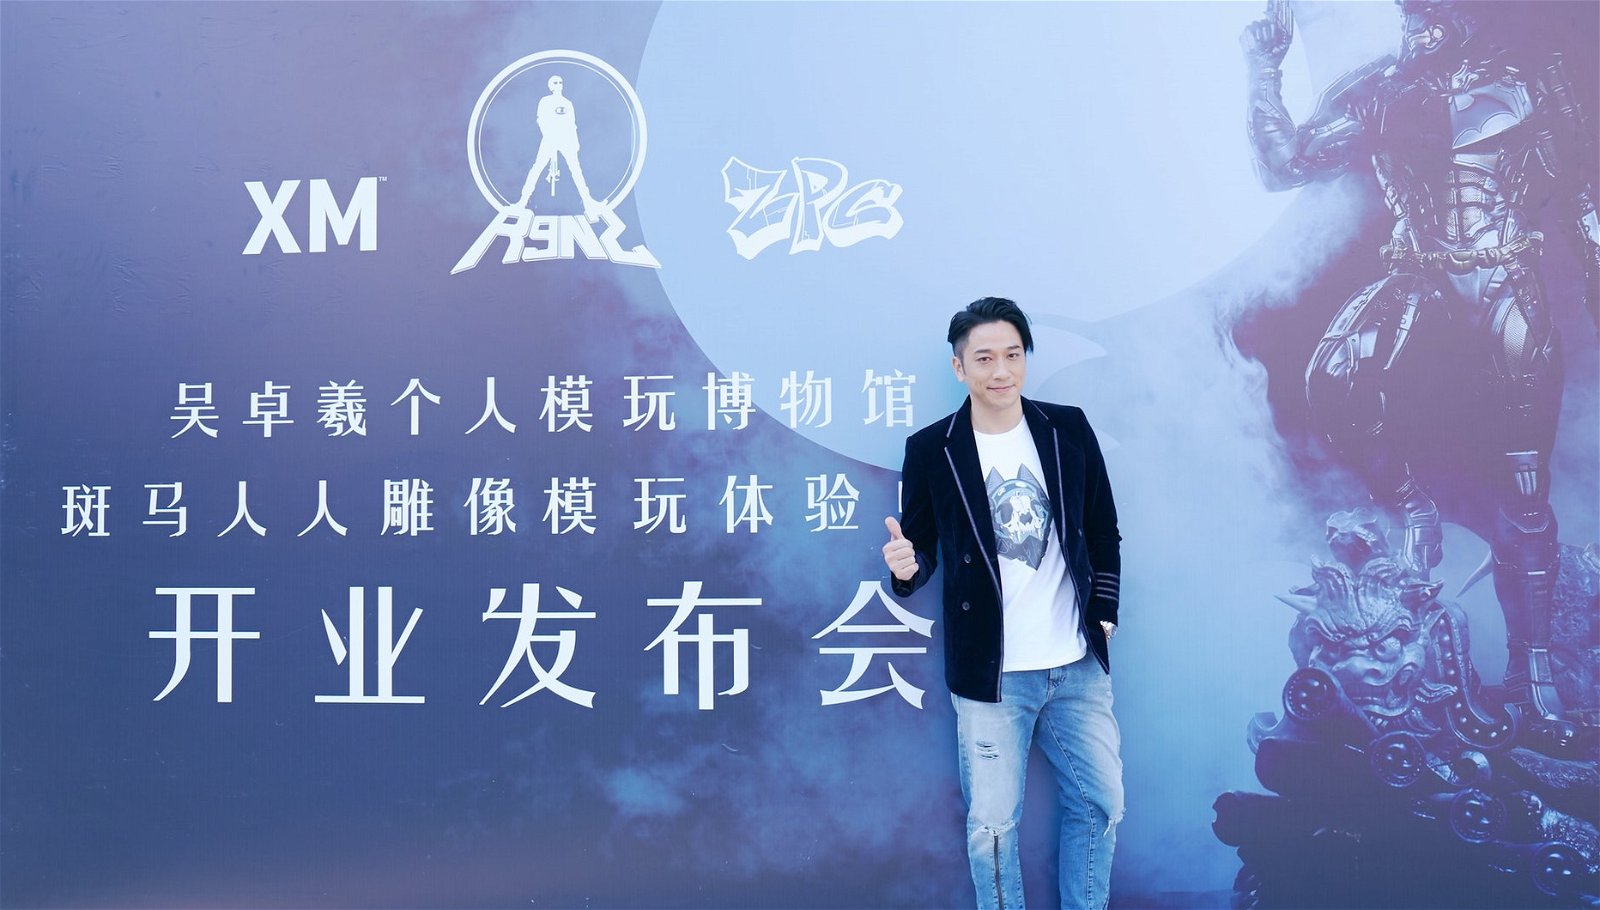 吴卓羲两年前在北京开博物馆摆放他的珍藏模型、雕塑。